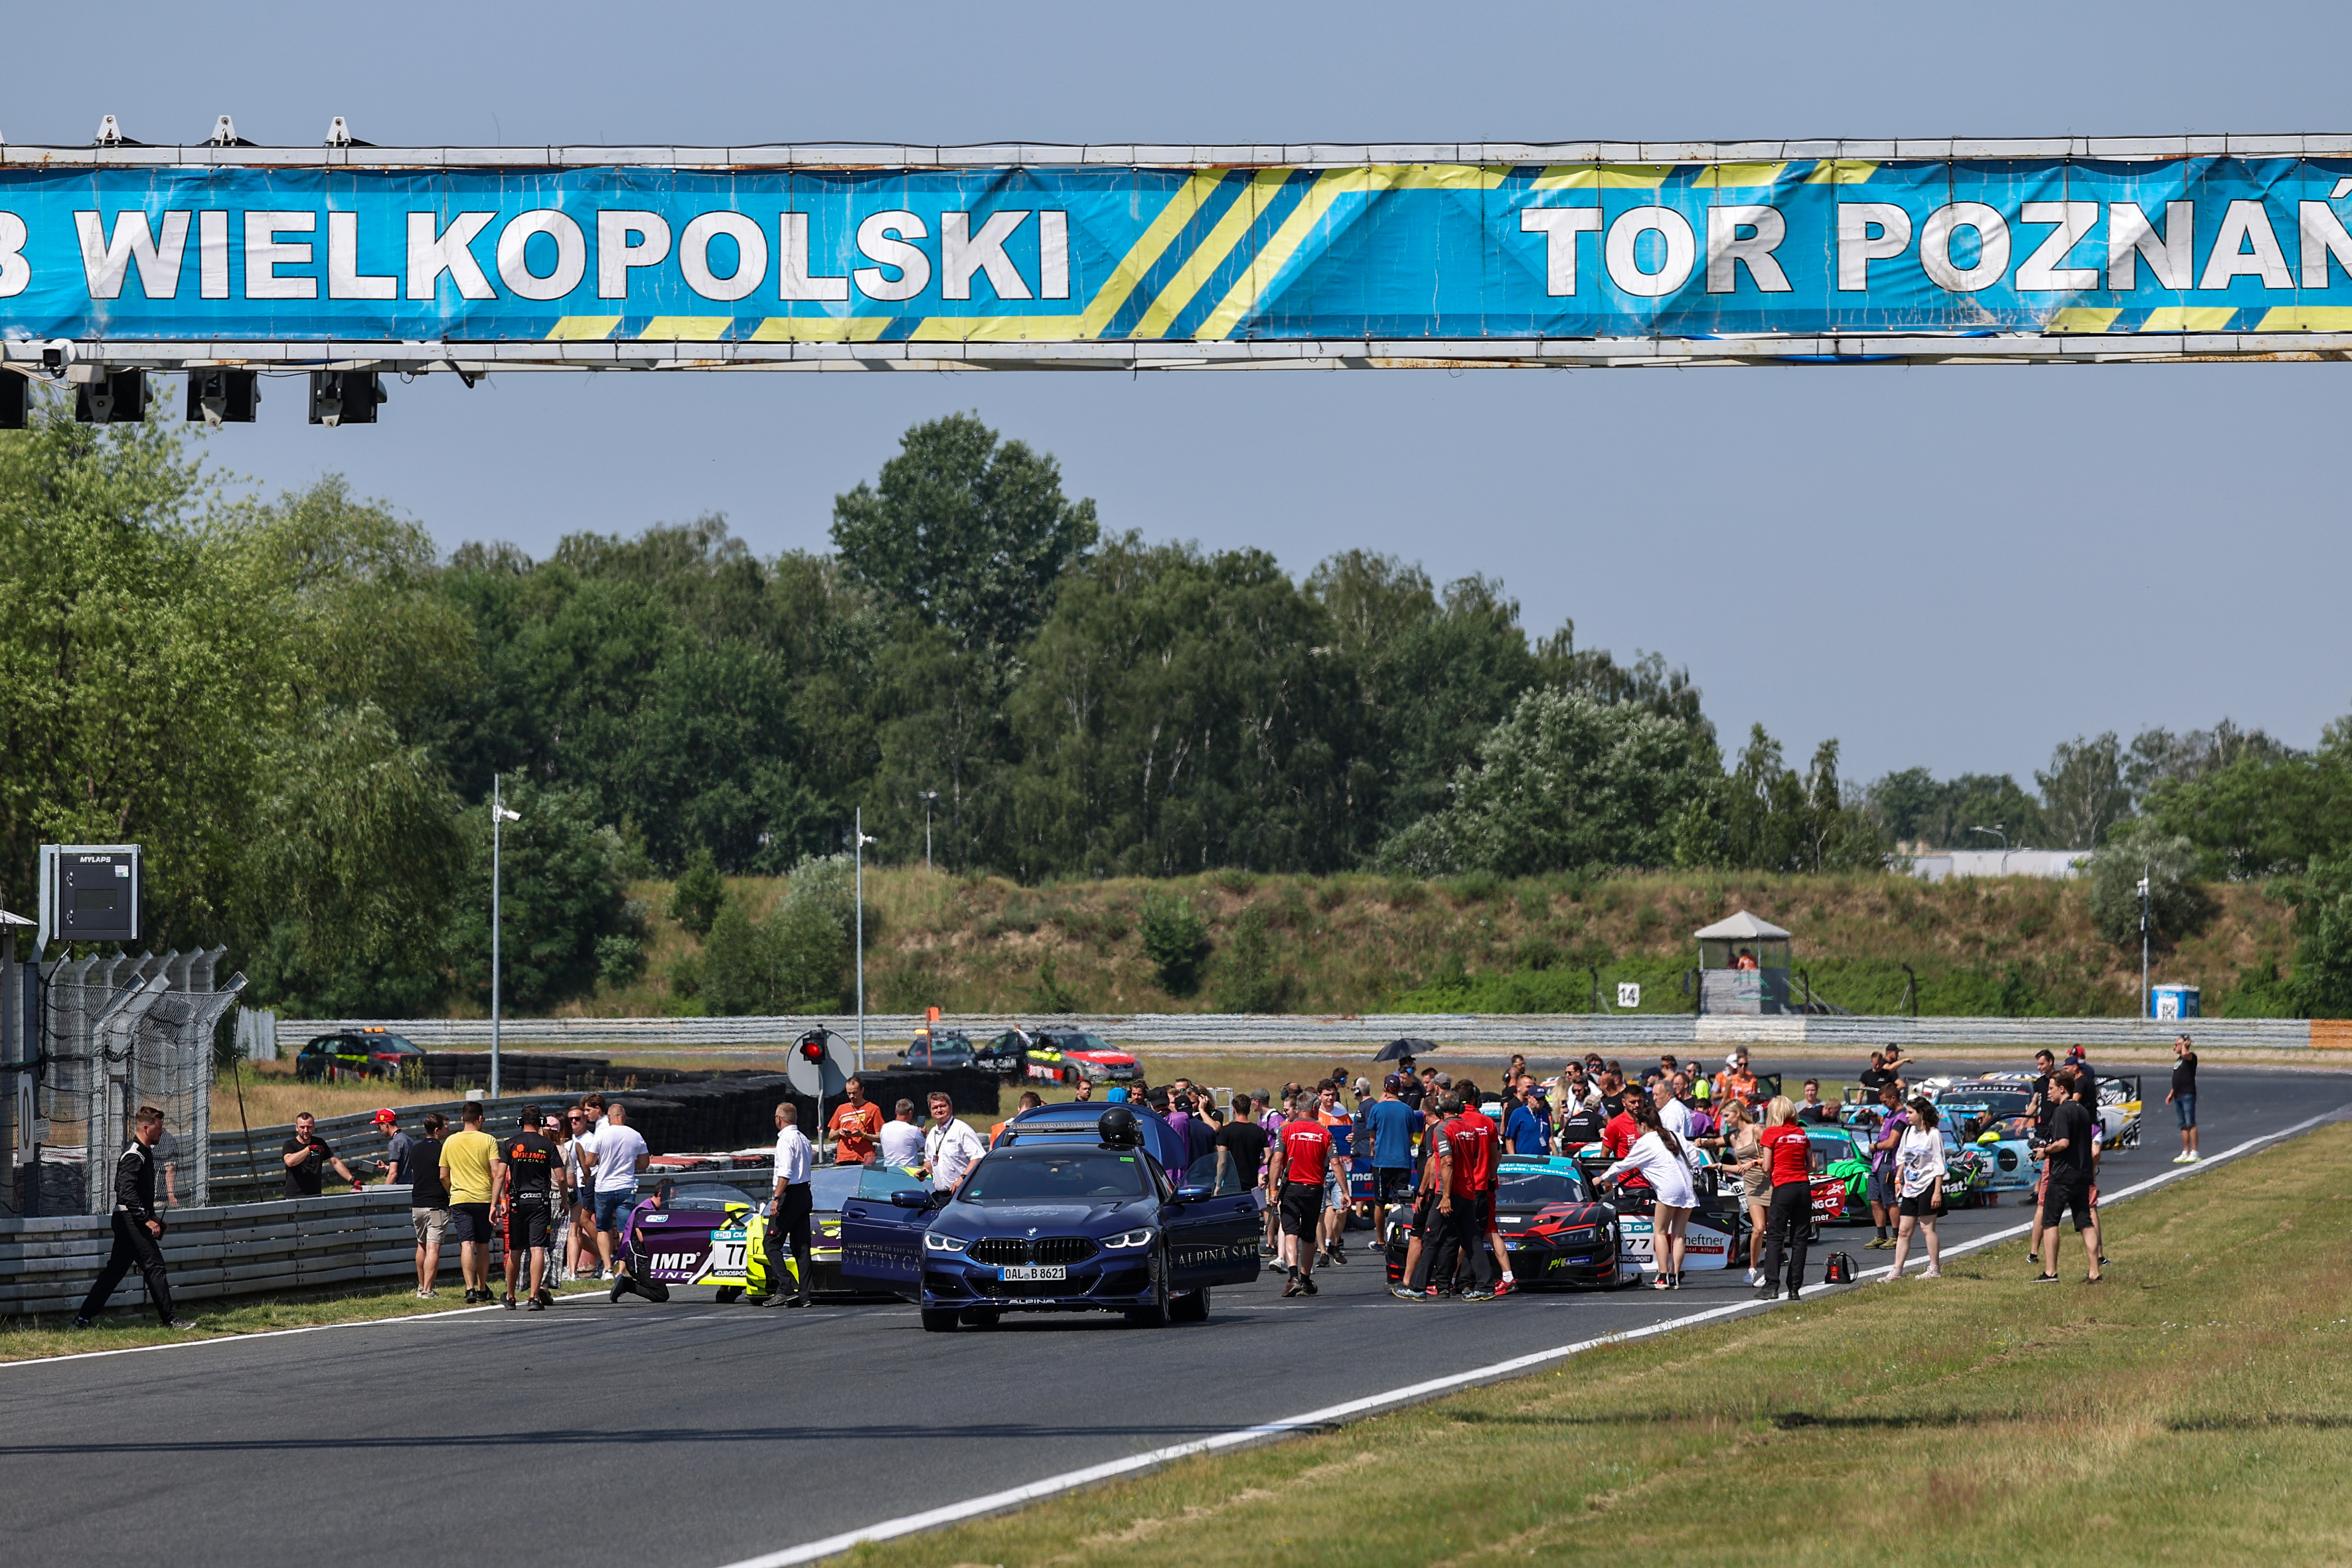 Robin Rogalski won Sunday’s race after starting from pole-position